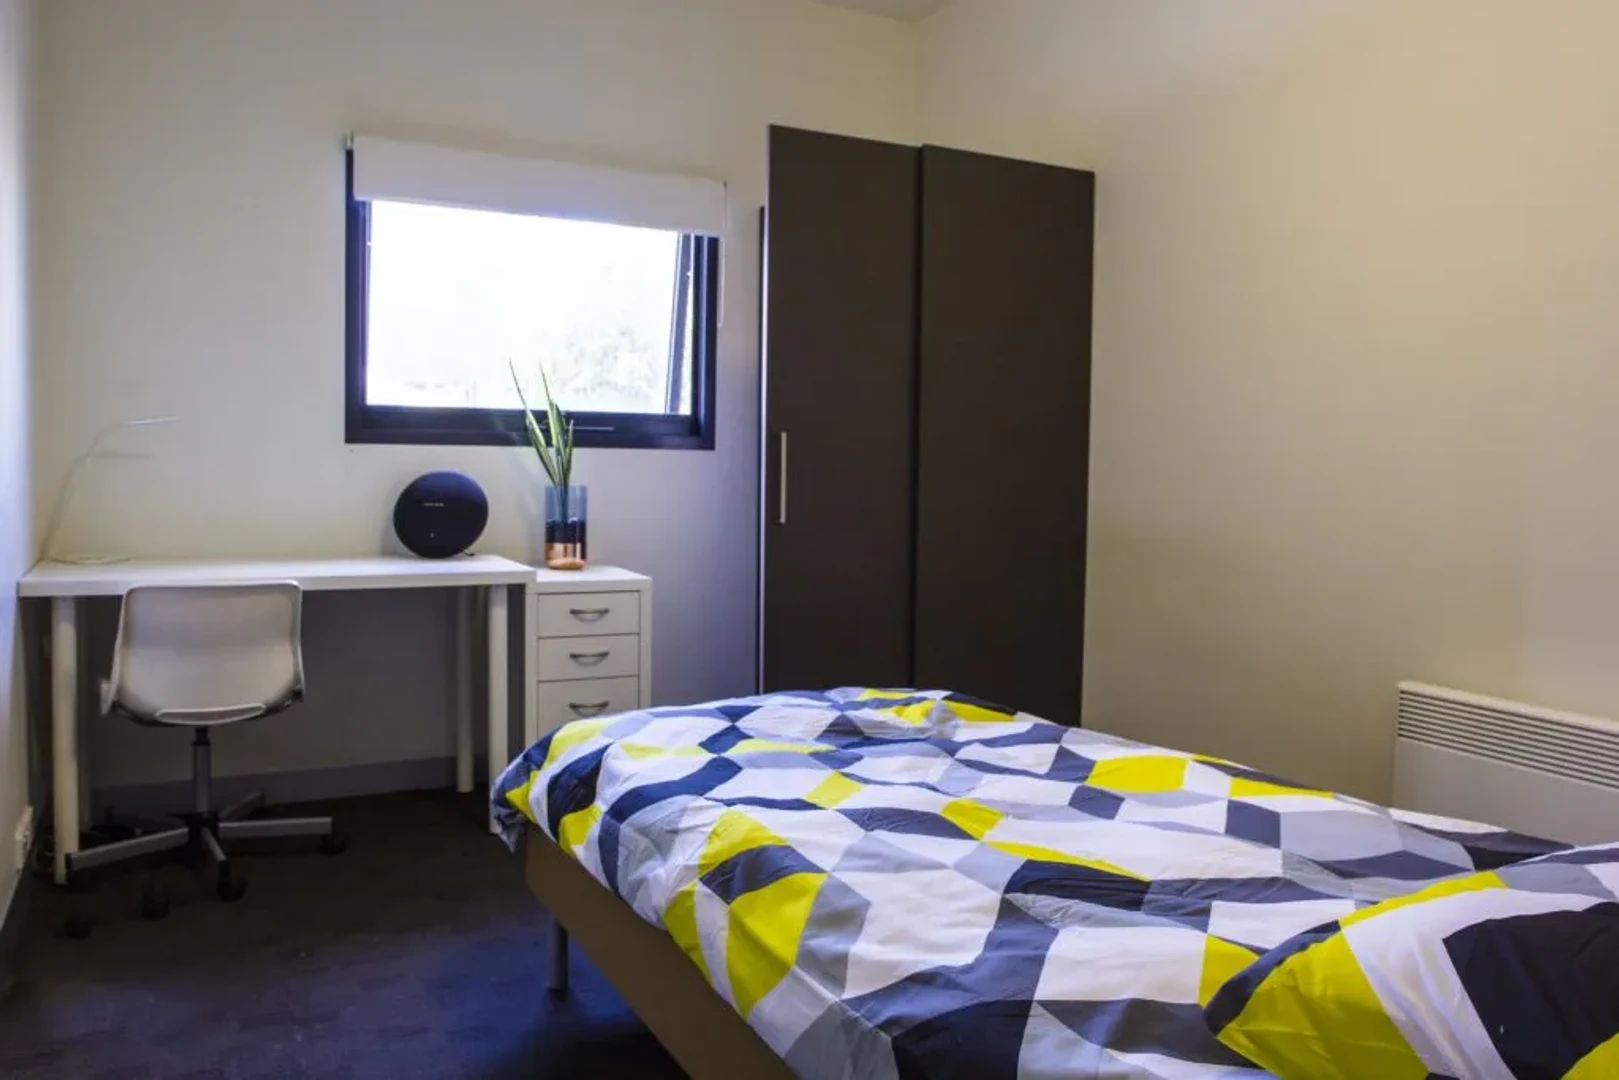 Melbourne de başka bir öğrenci ile paylaşılan oda